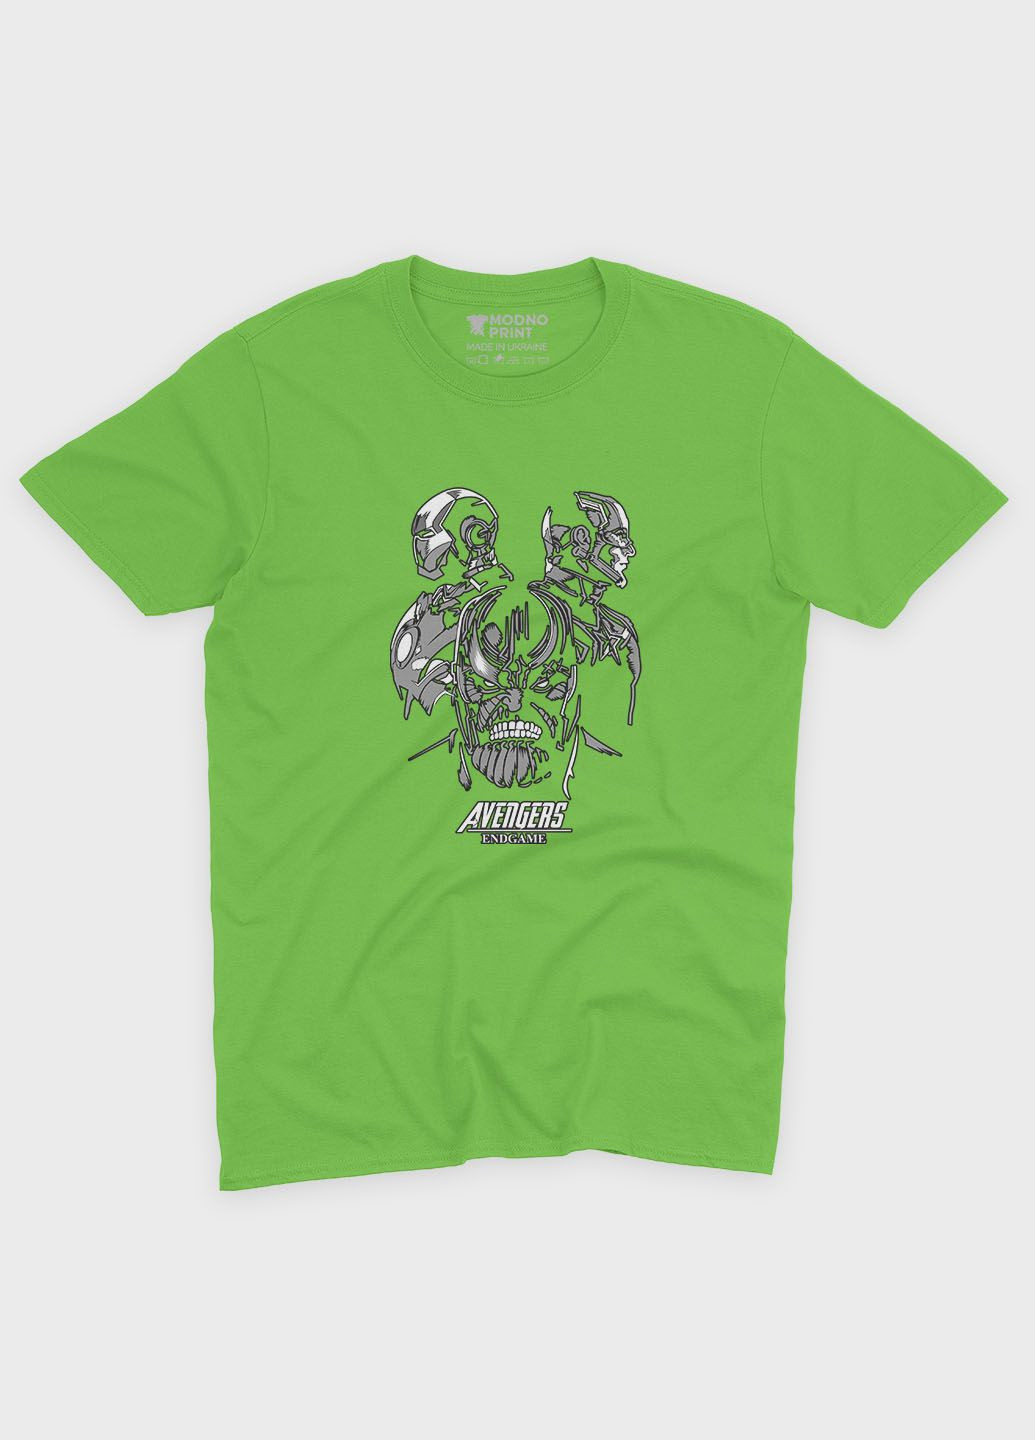 Салатова демісезонна футболка для хлопчика з принтом супезлодія - танос (ts001-1-kiw-006-019-013-b) Modno